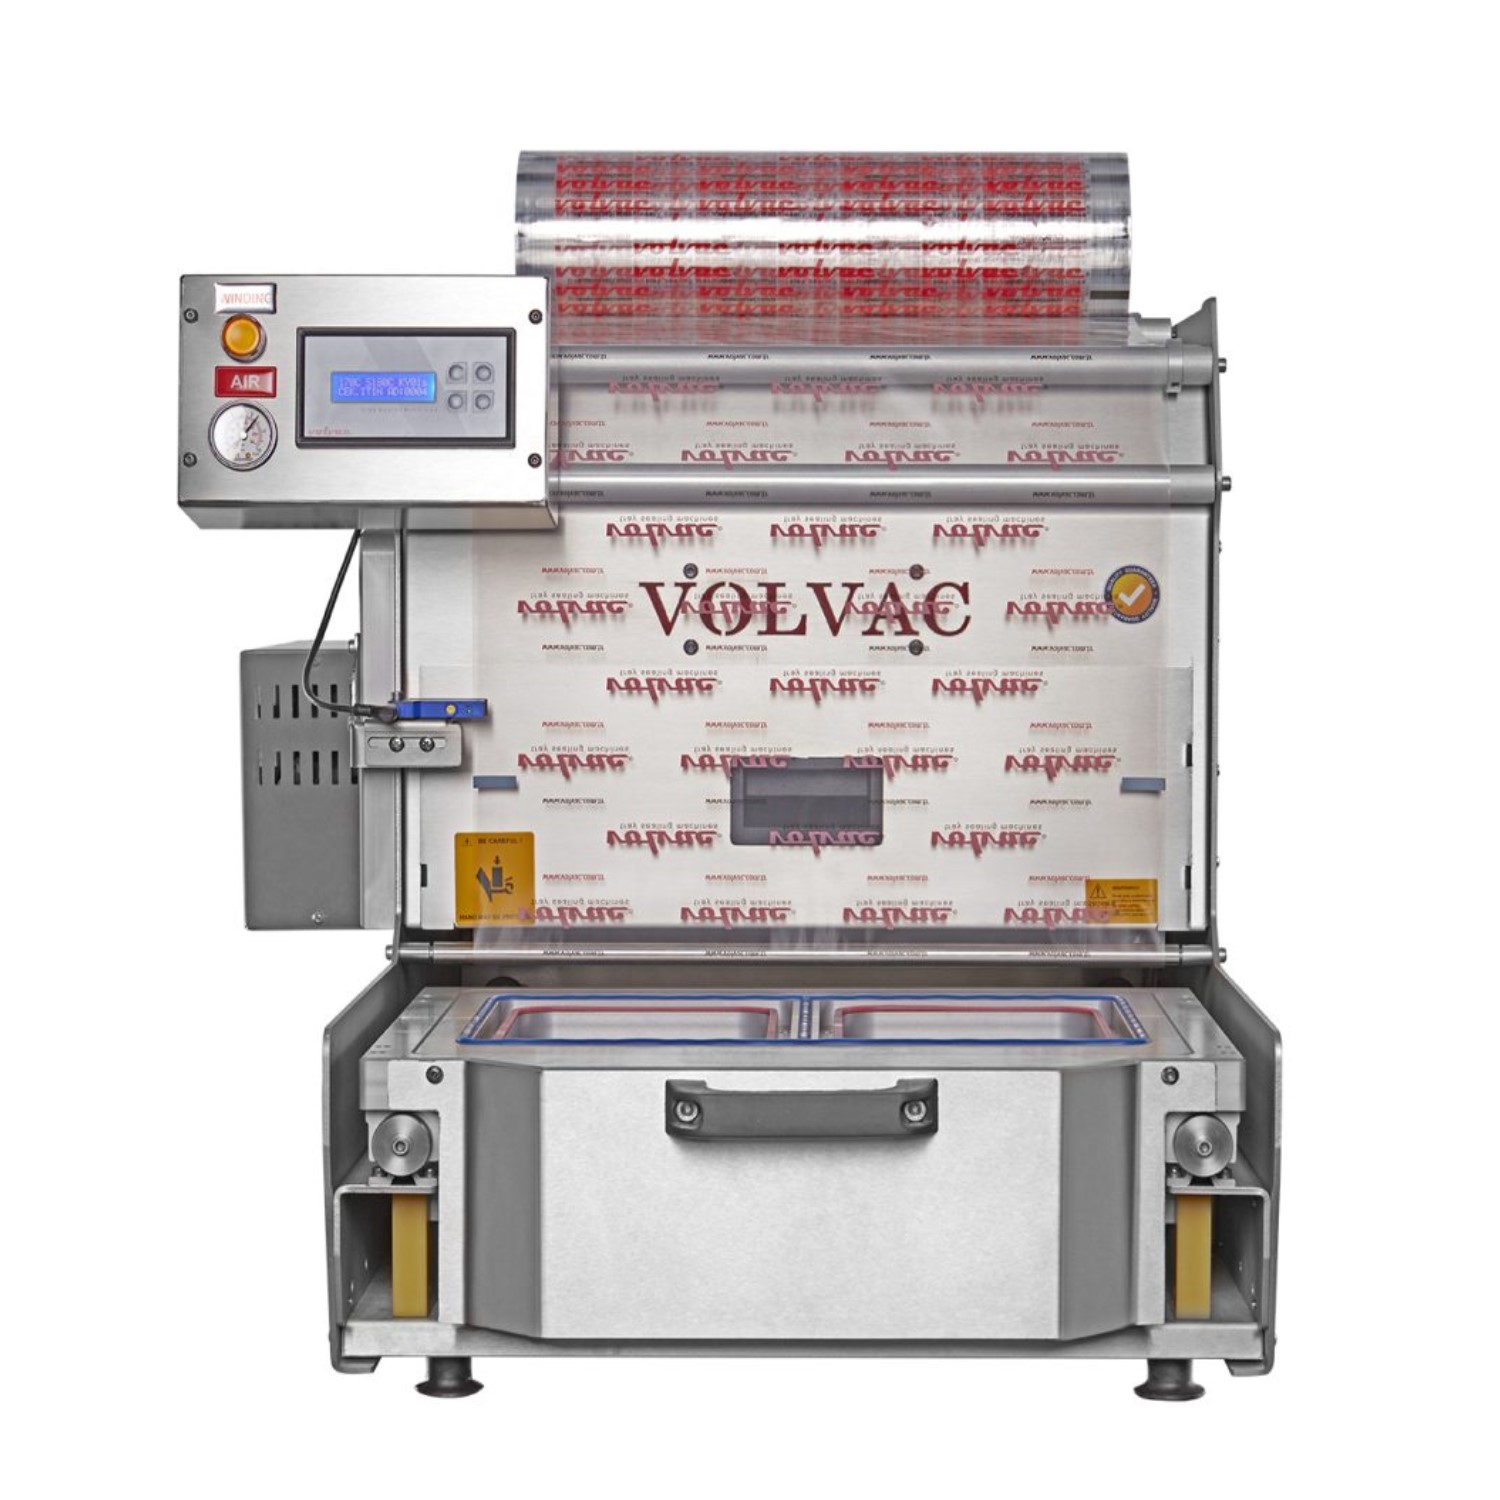 Volvac TS52 Çekmeceli Tabak Kapatma Makinası -1.jpg (246 KB)